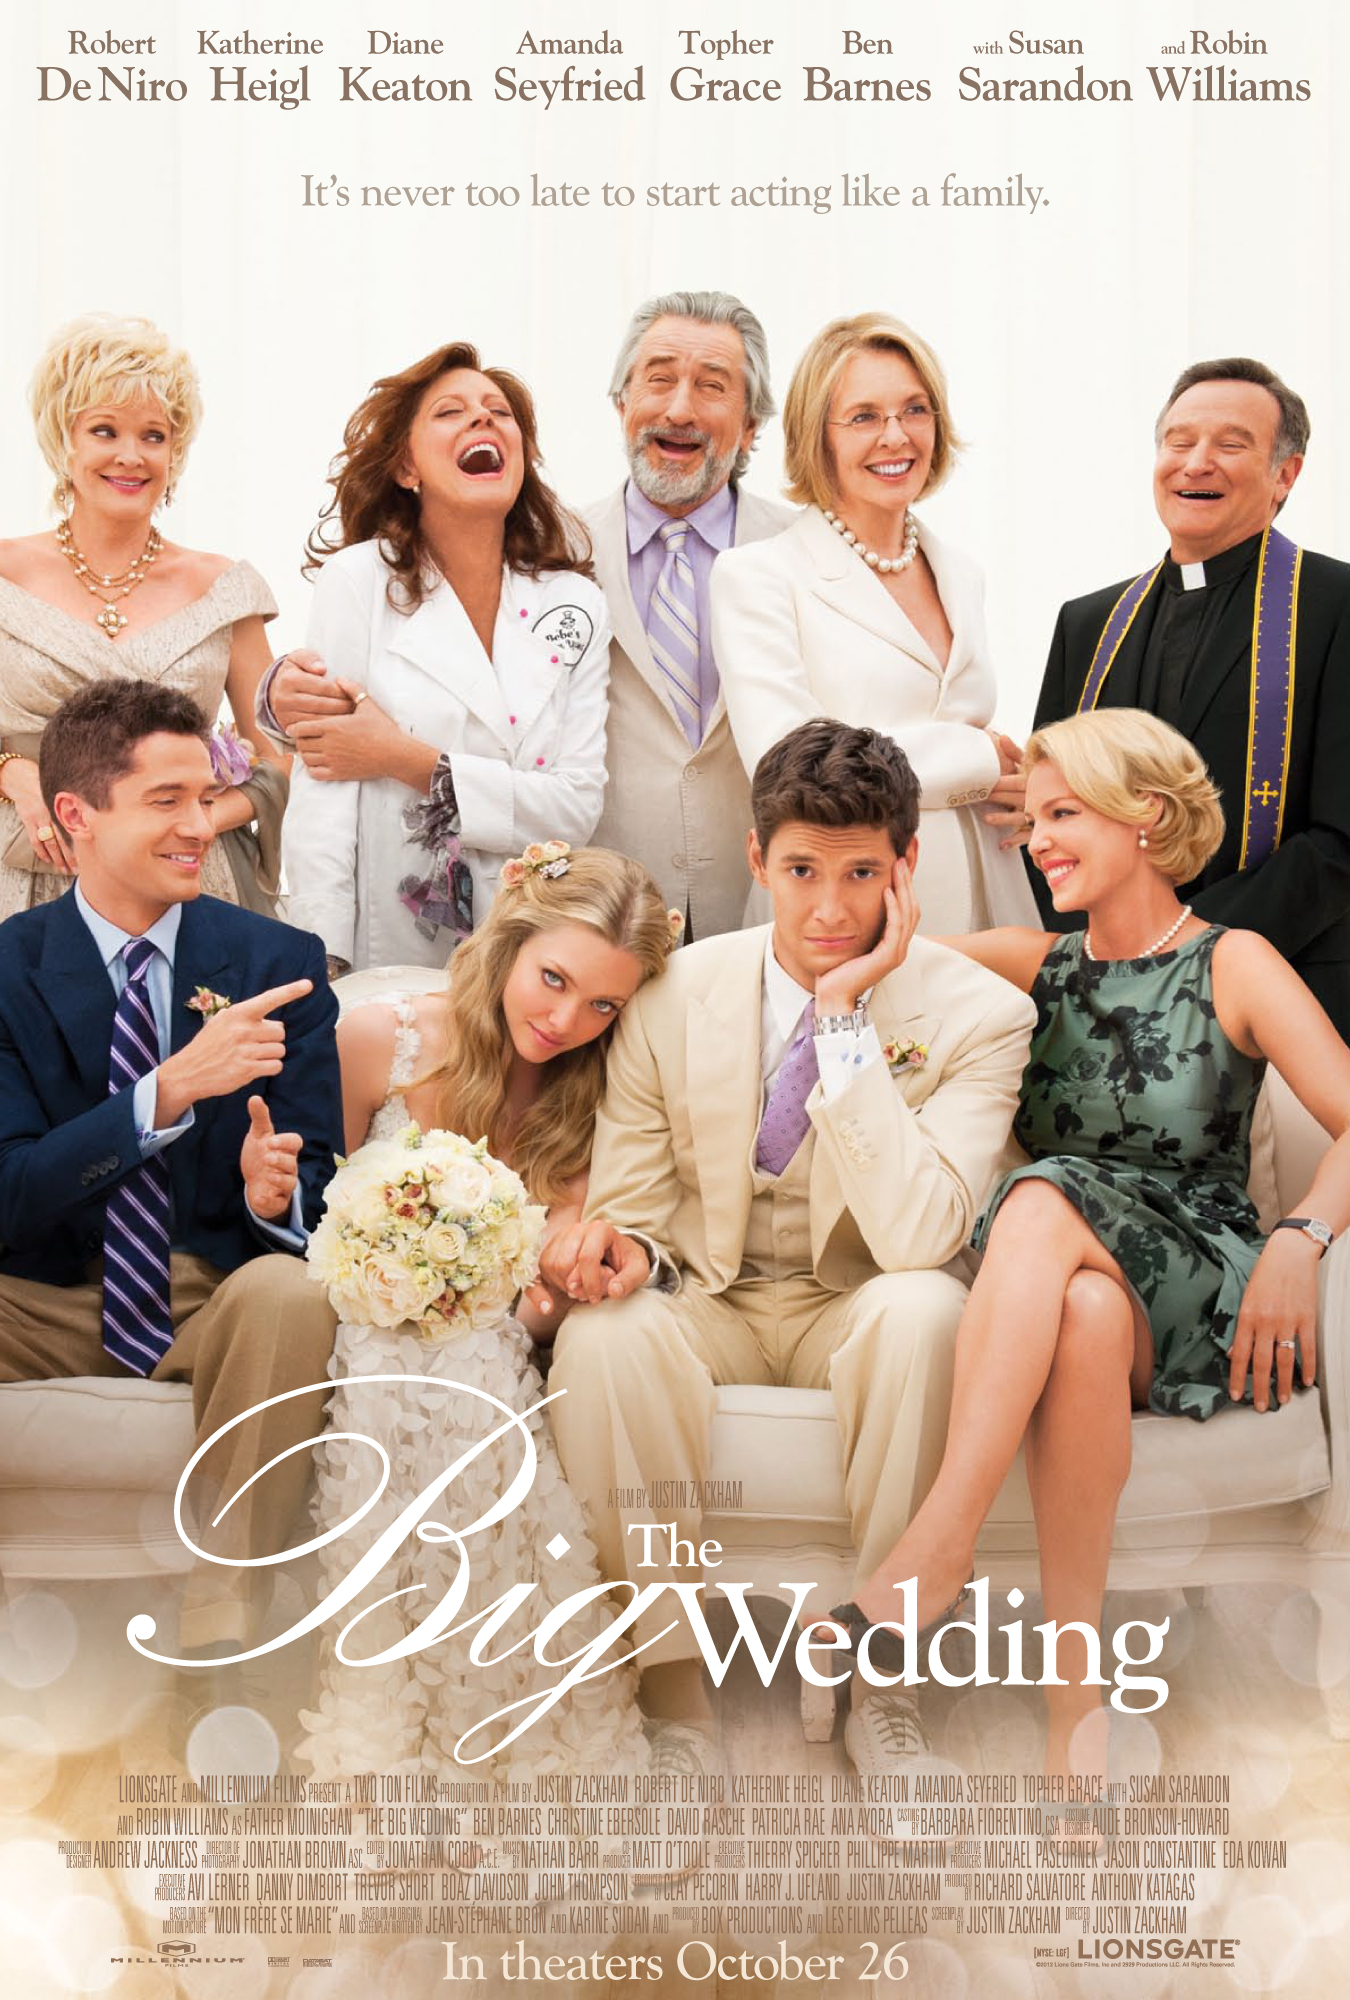 Ben Barnes in The Big Wedding